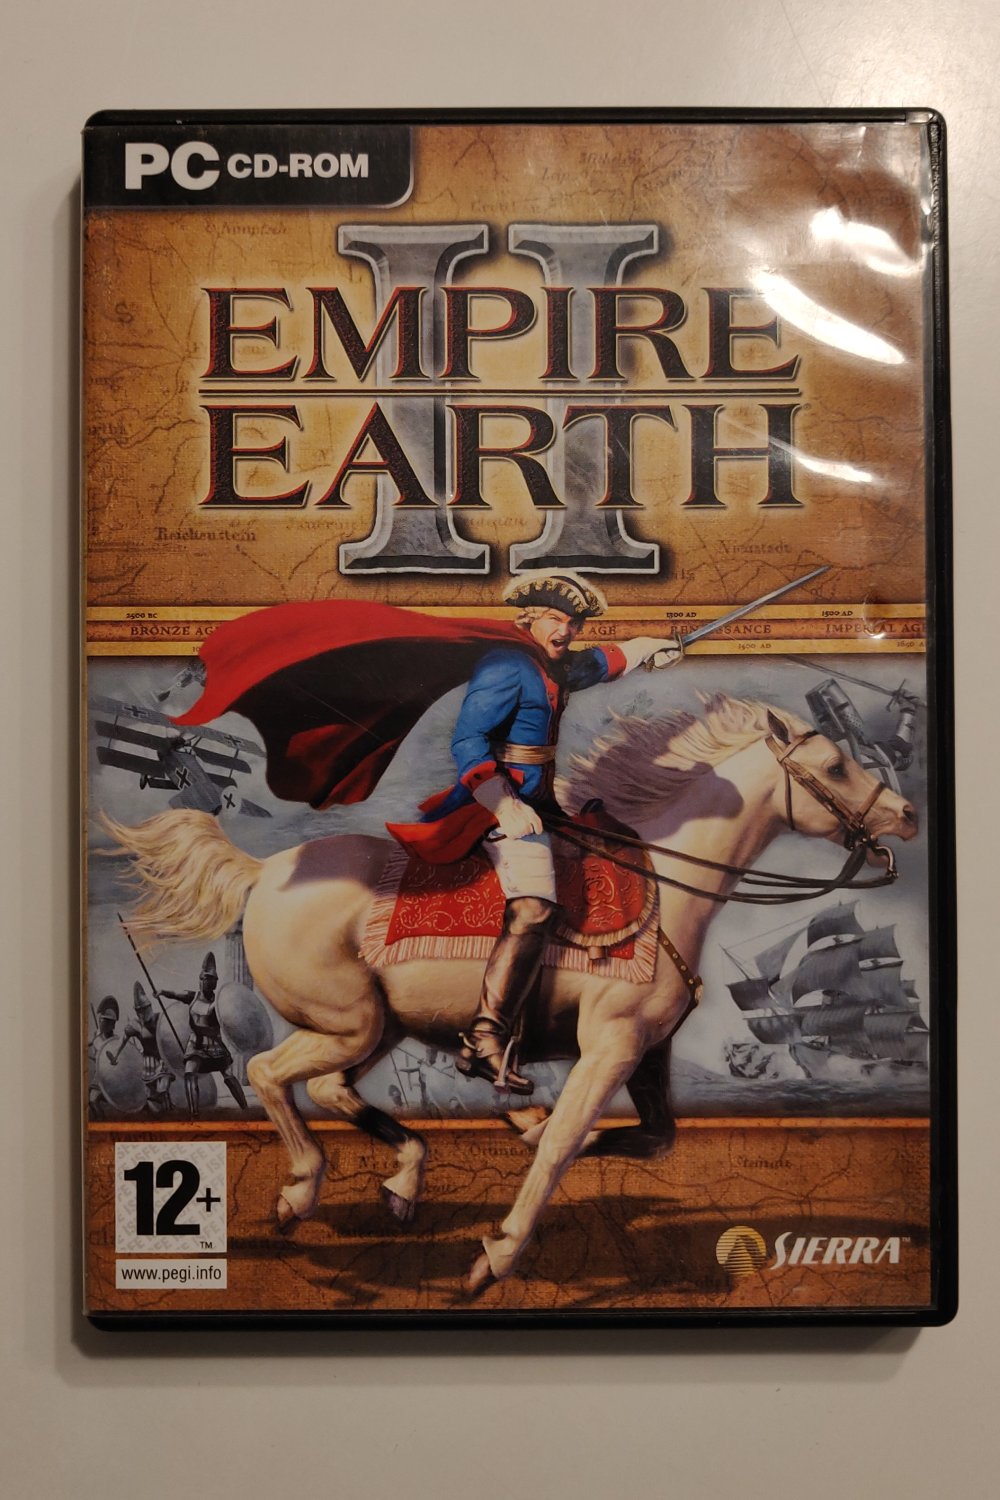 Empire Earth II (PC) (CIB) - Picture 1 of 1